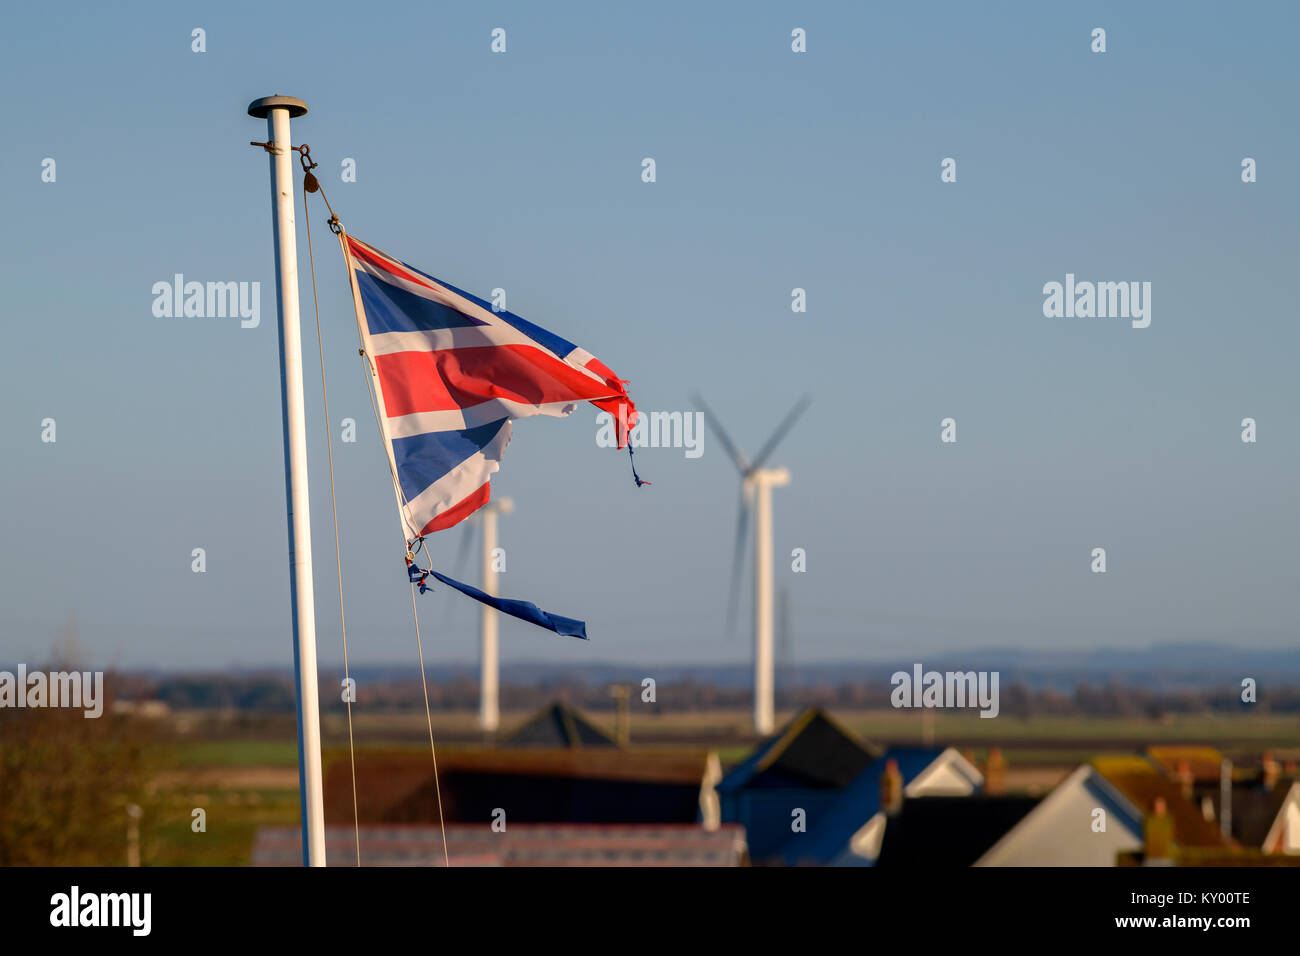 Ein tattered Union Jack Flagge im Wind flattern vor blauem Himmel. Stockfoto